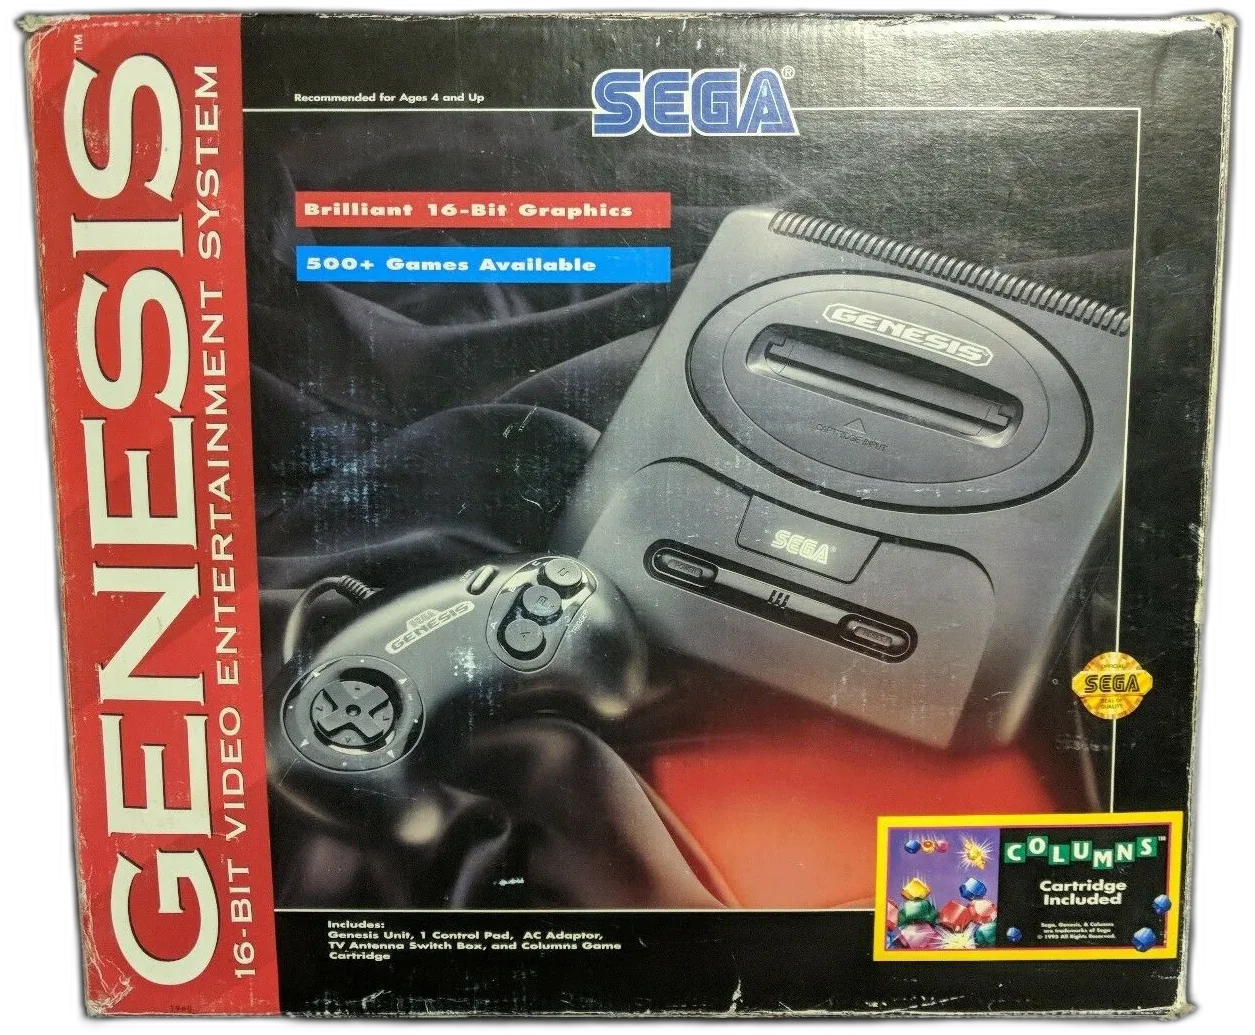  Sega Genesis Model 2 Columns Bundle